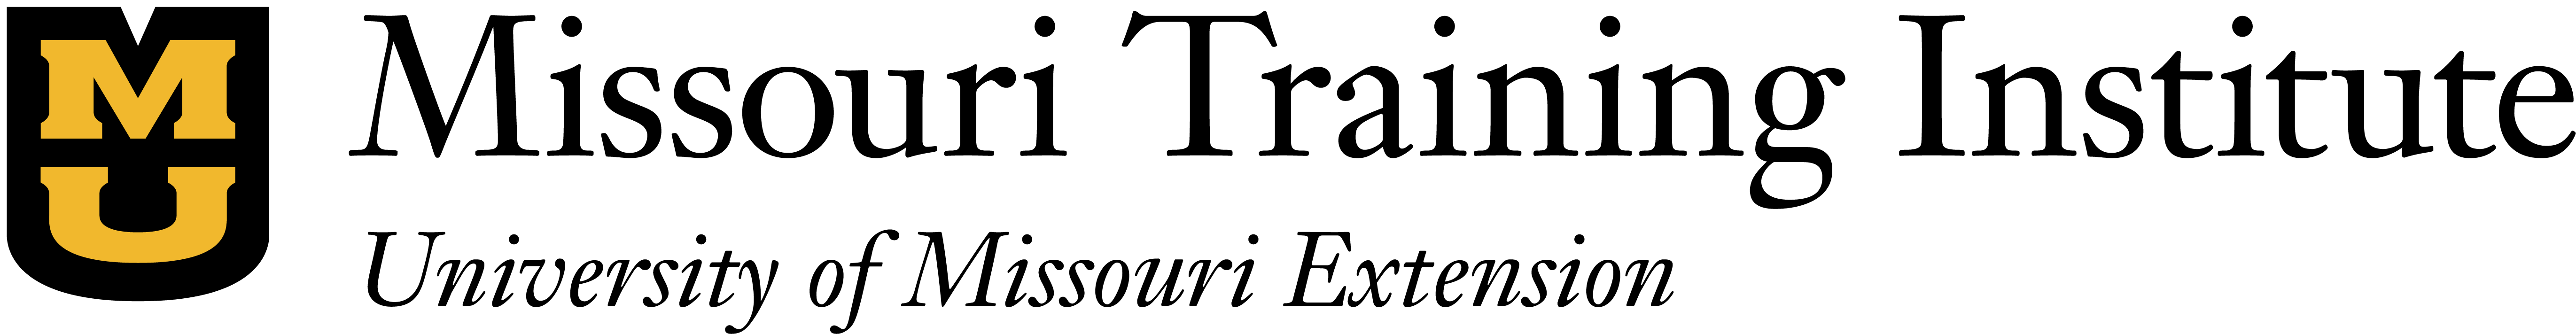 Missouri Training Institute